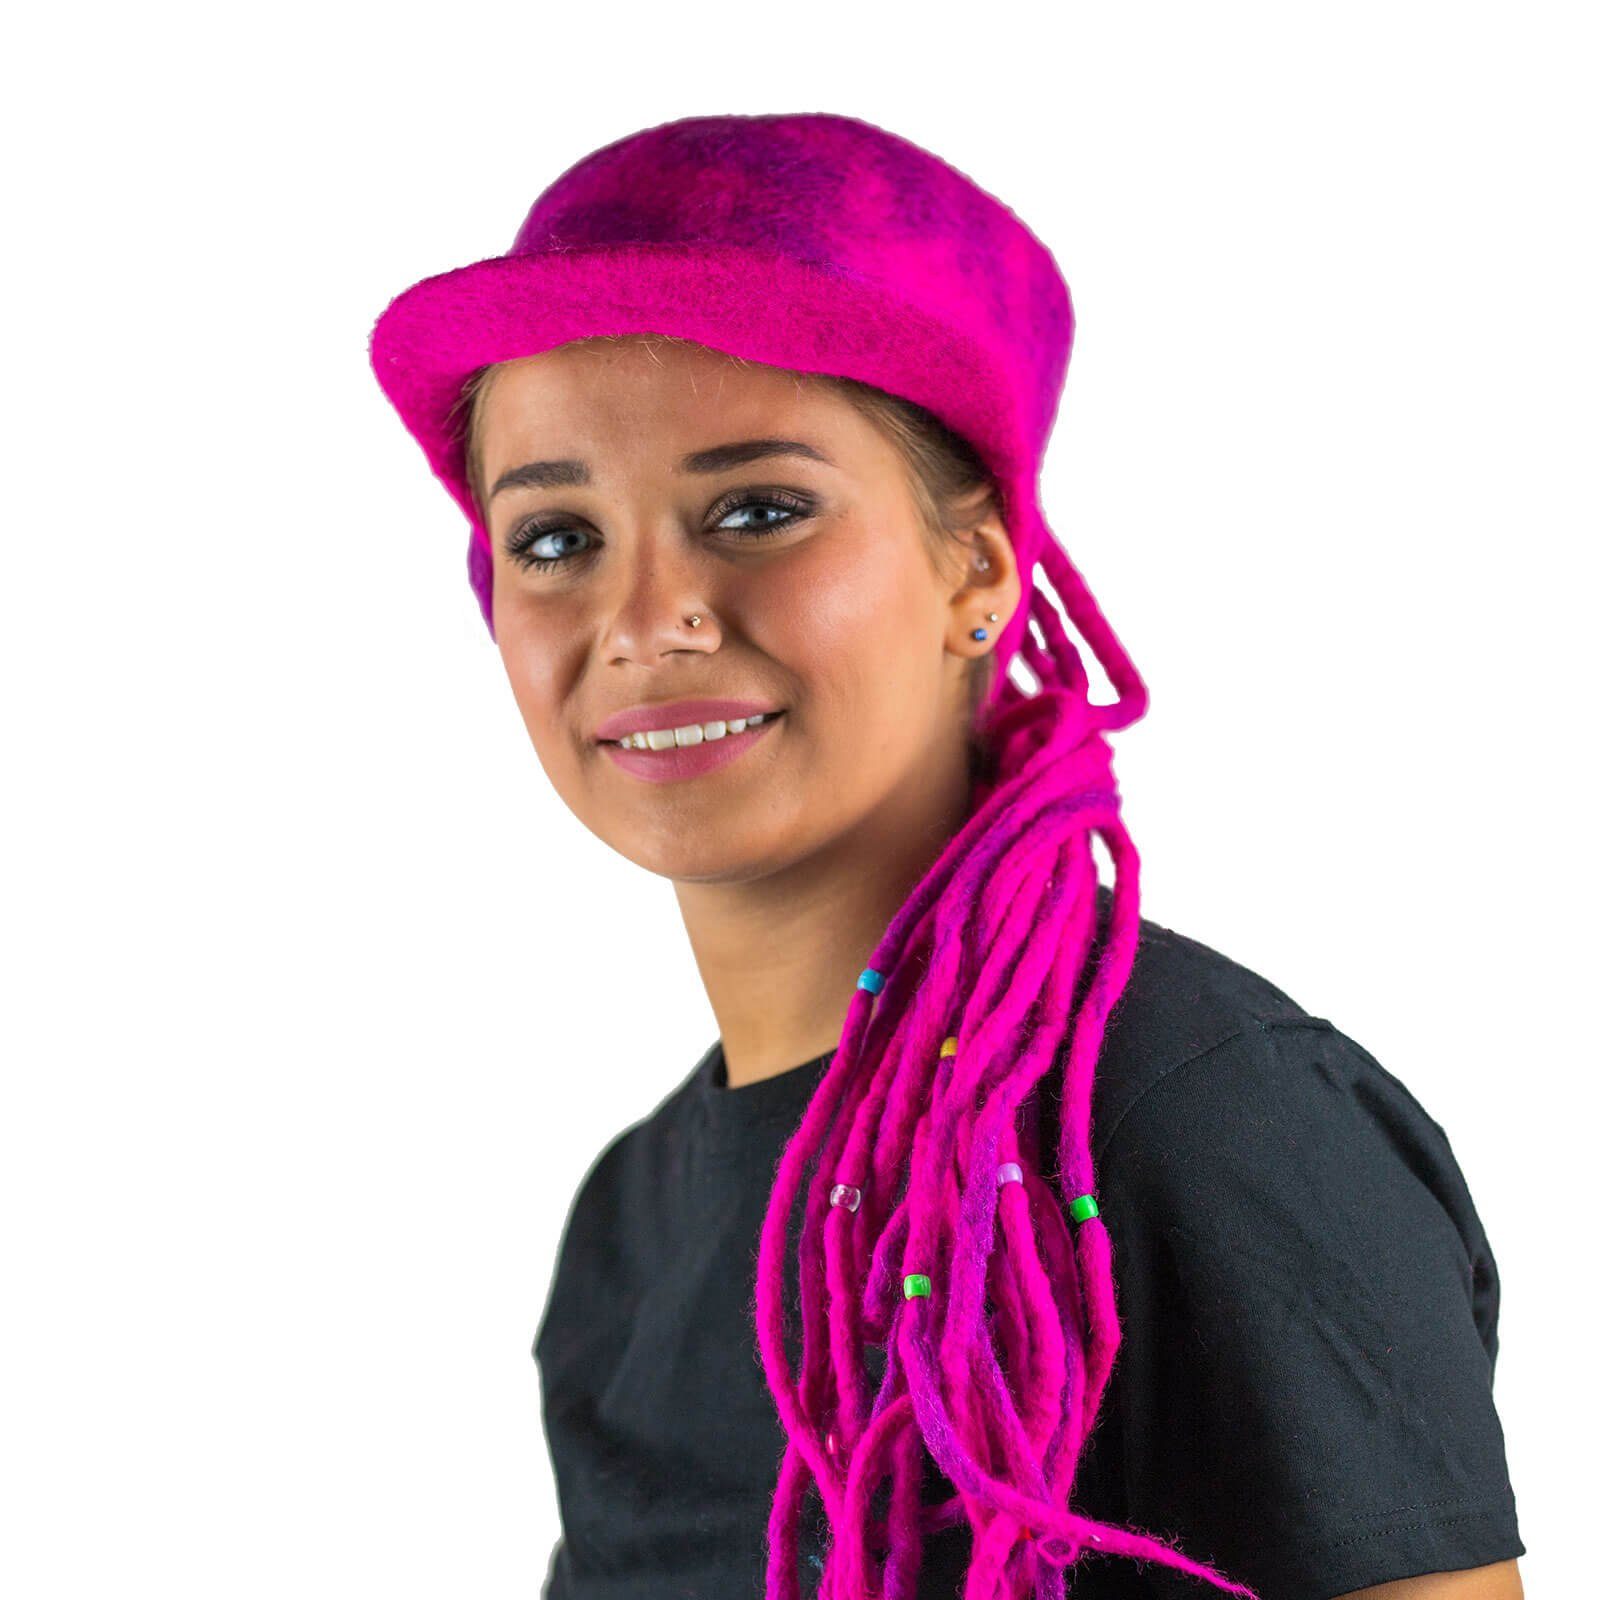 KUNST UND MAGIE Bunter Filzhut Hippie Filz Ballonmütze Magie Pink Dreadlock Kunst Hut und Goa aus